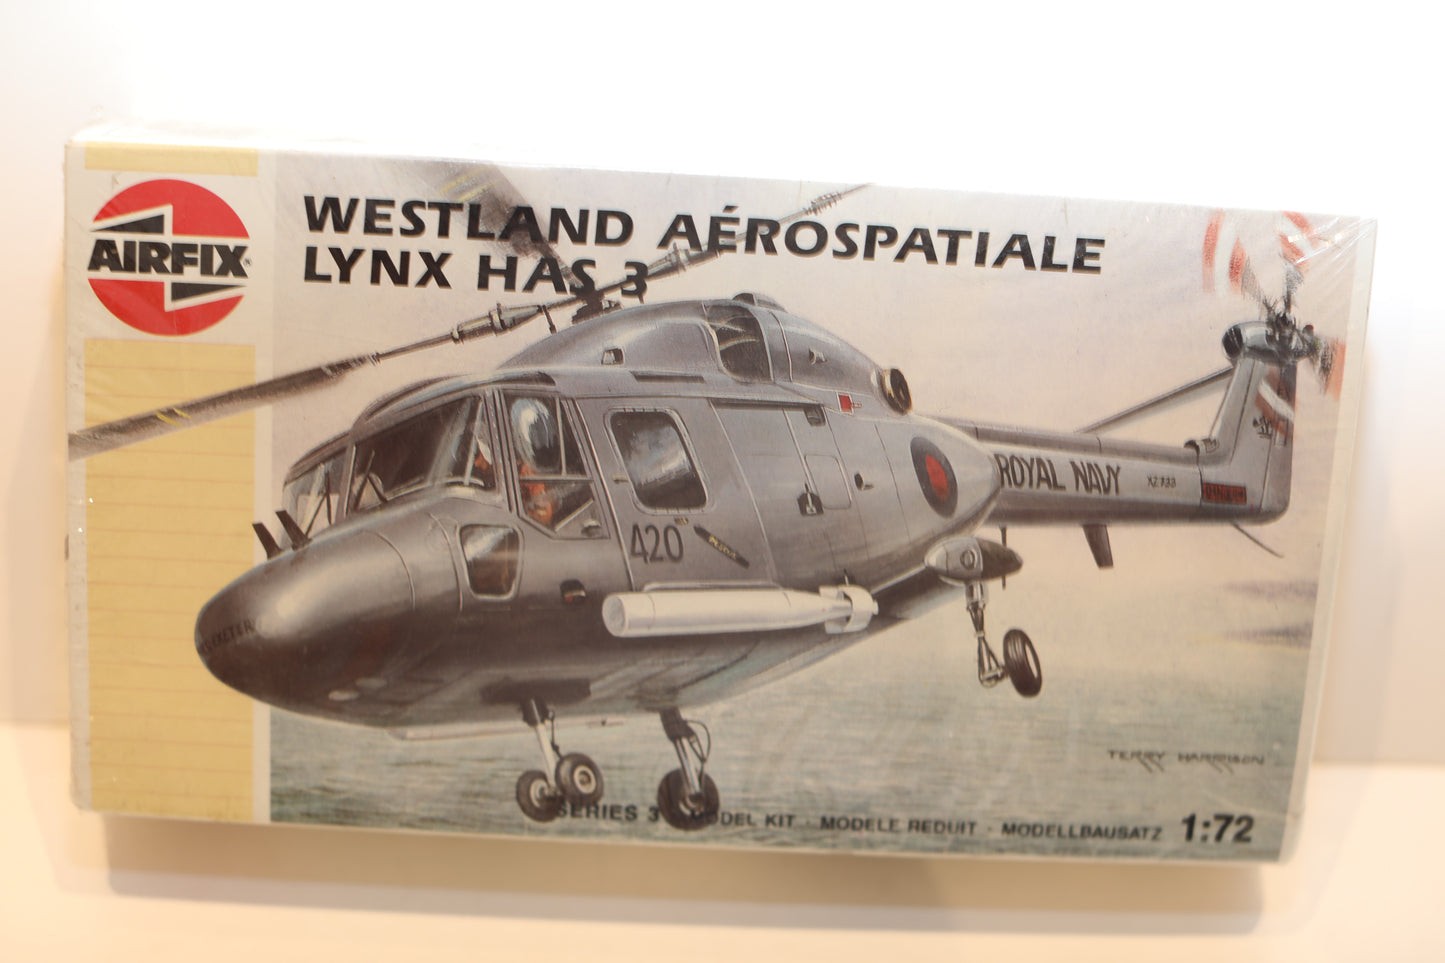 Airfix Westland Aerospatiale Lynx HAS 3